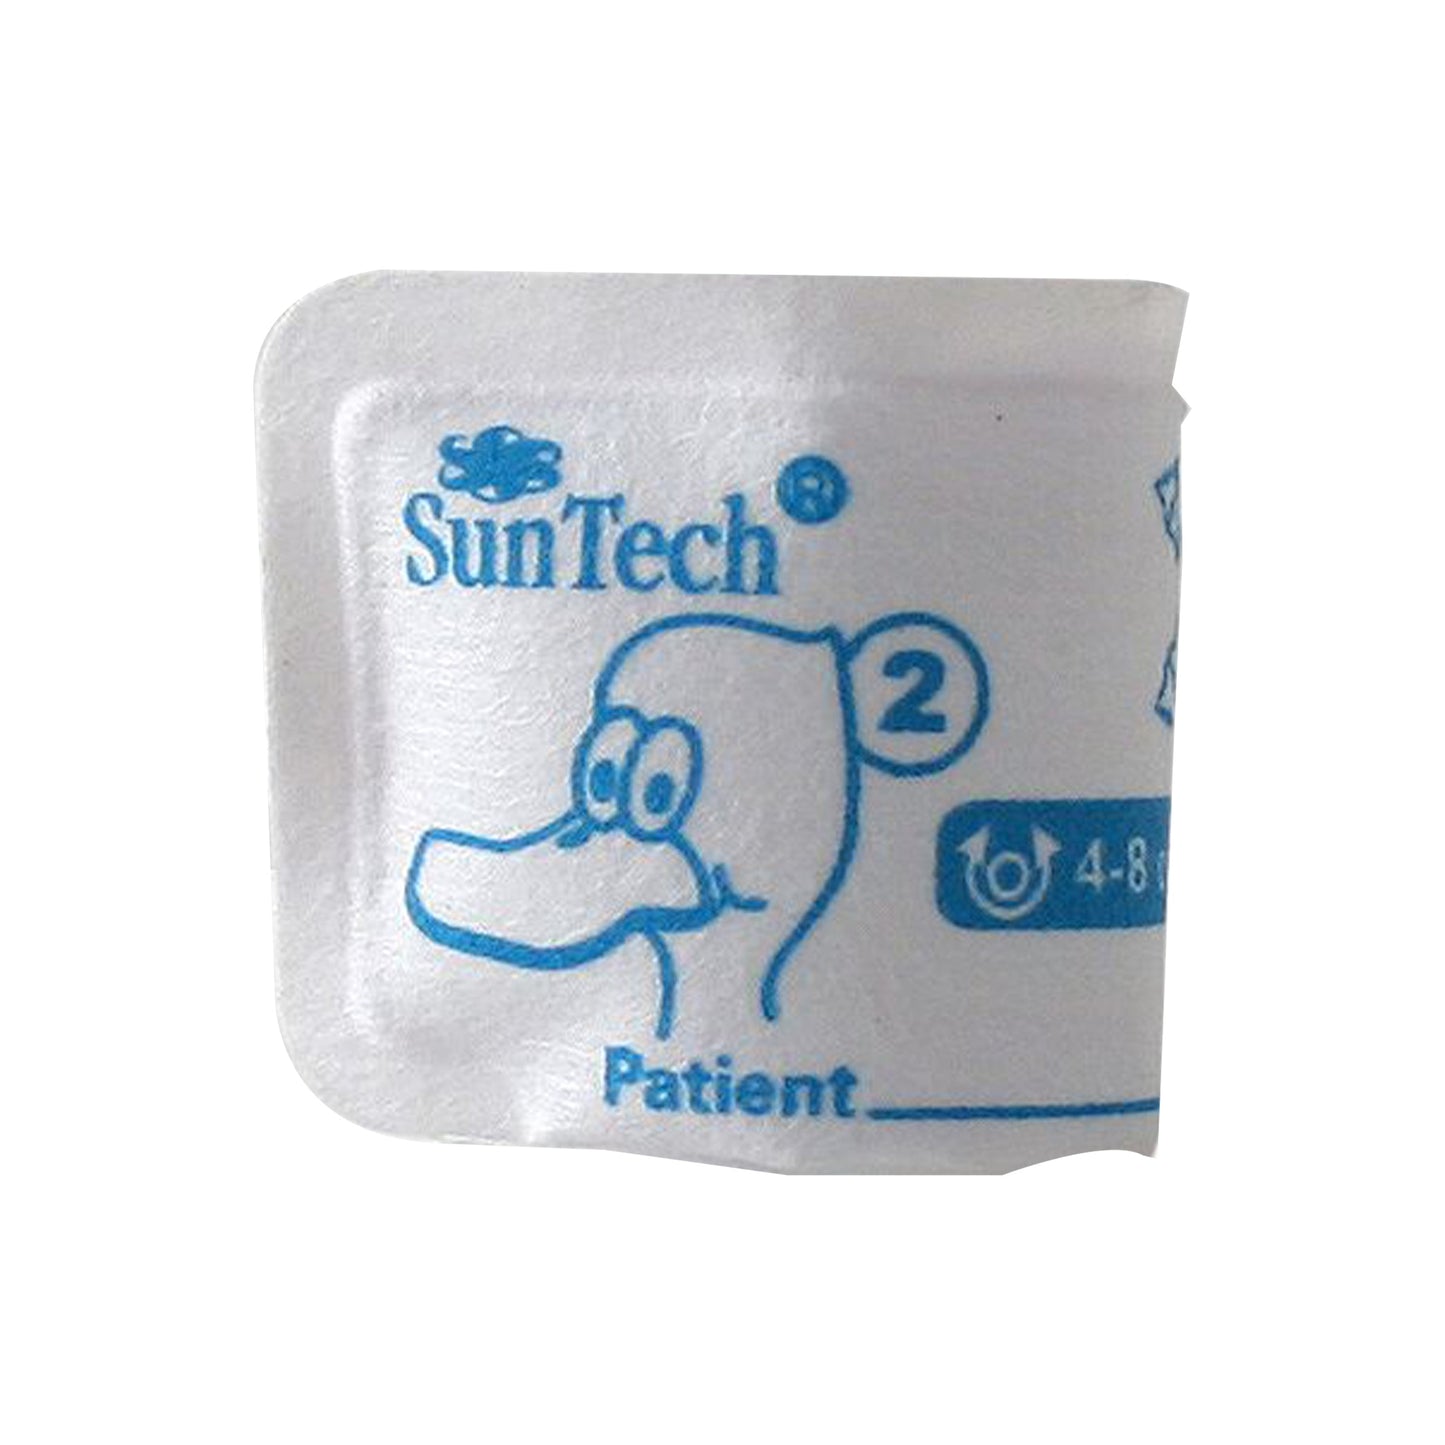 SunTech BP Vet Cuff Size 2, 4–8cm